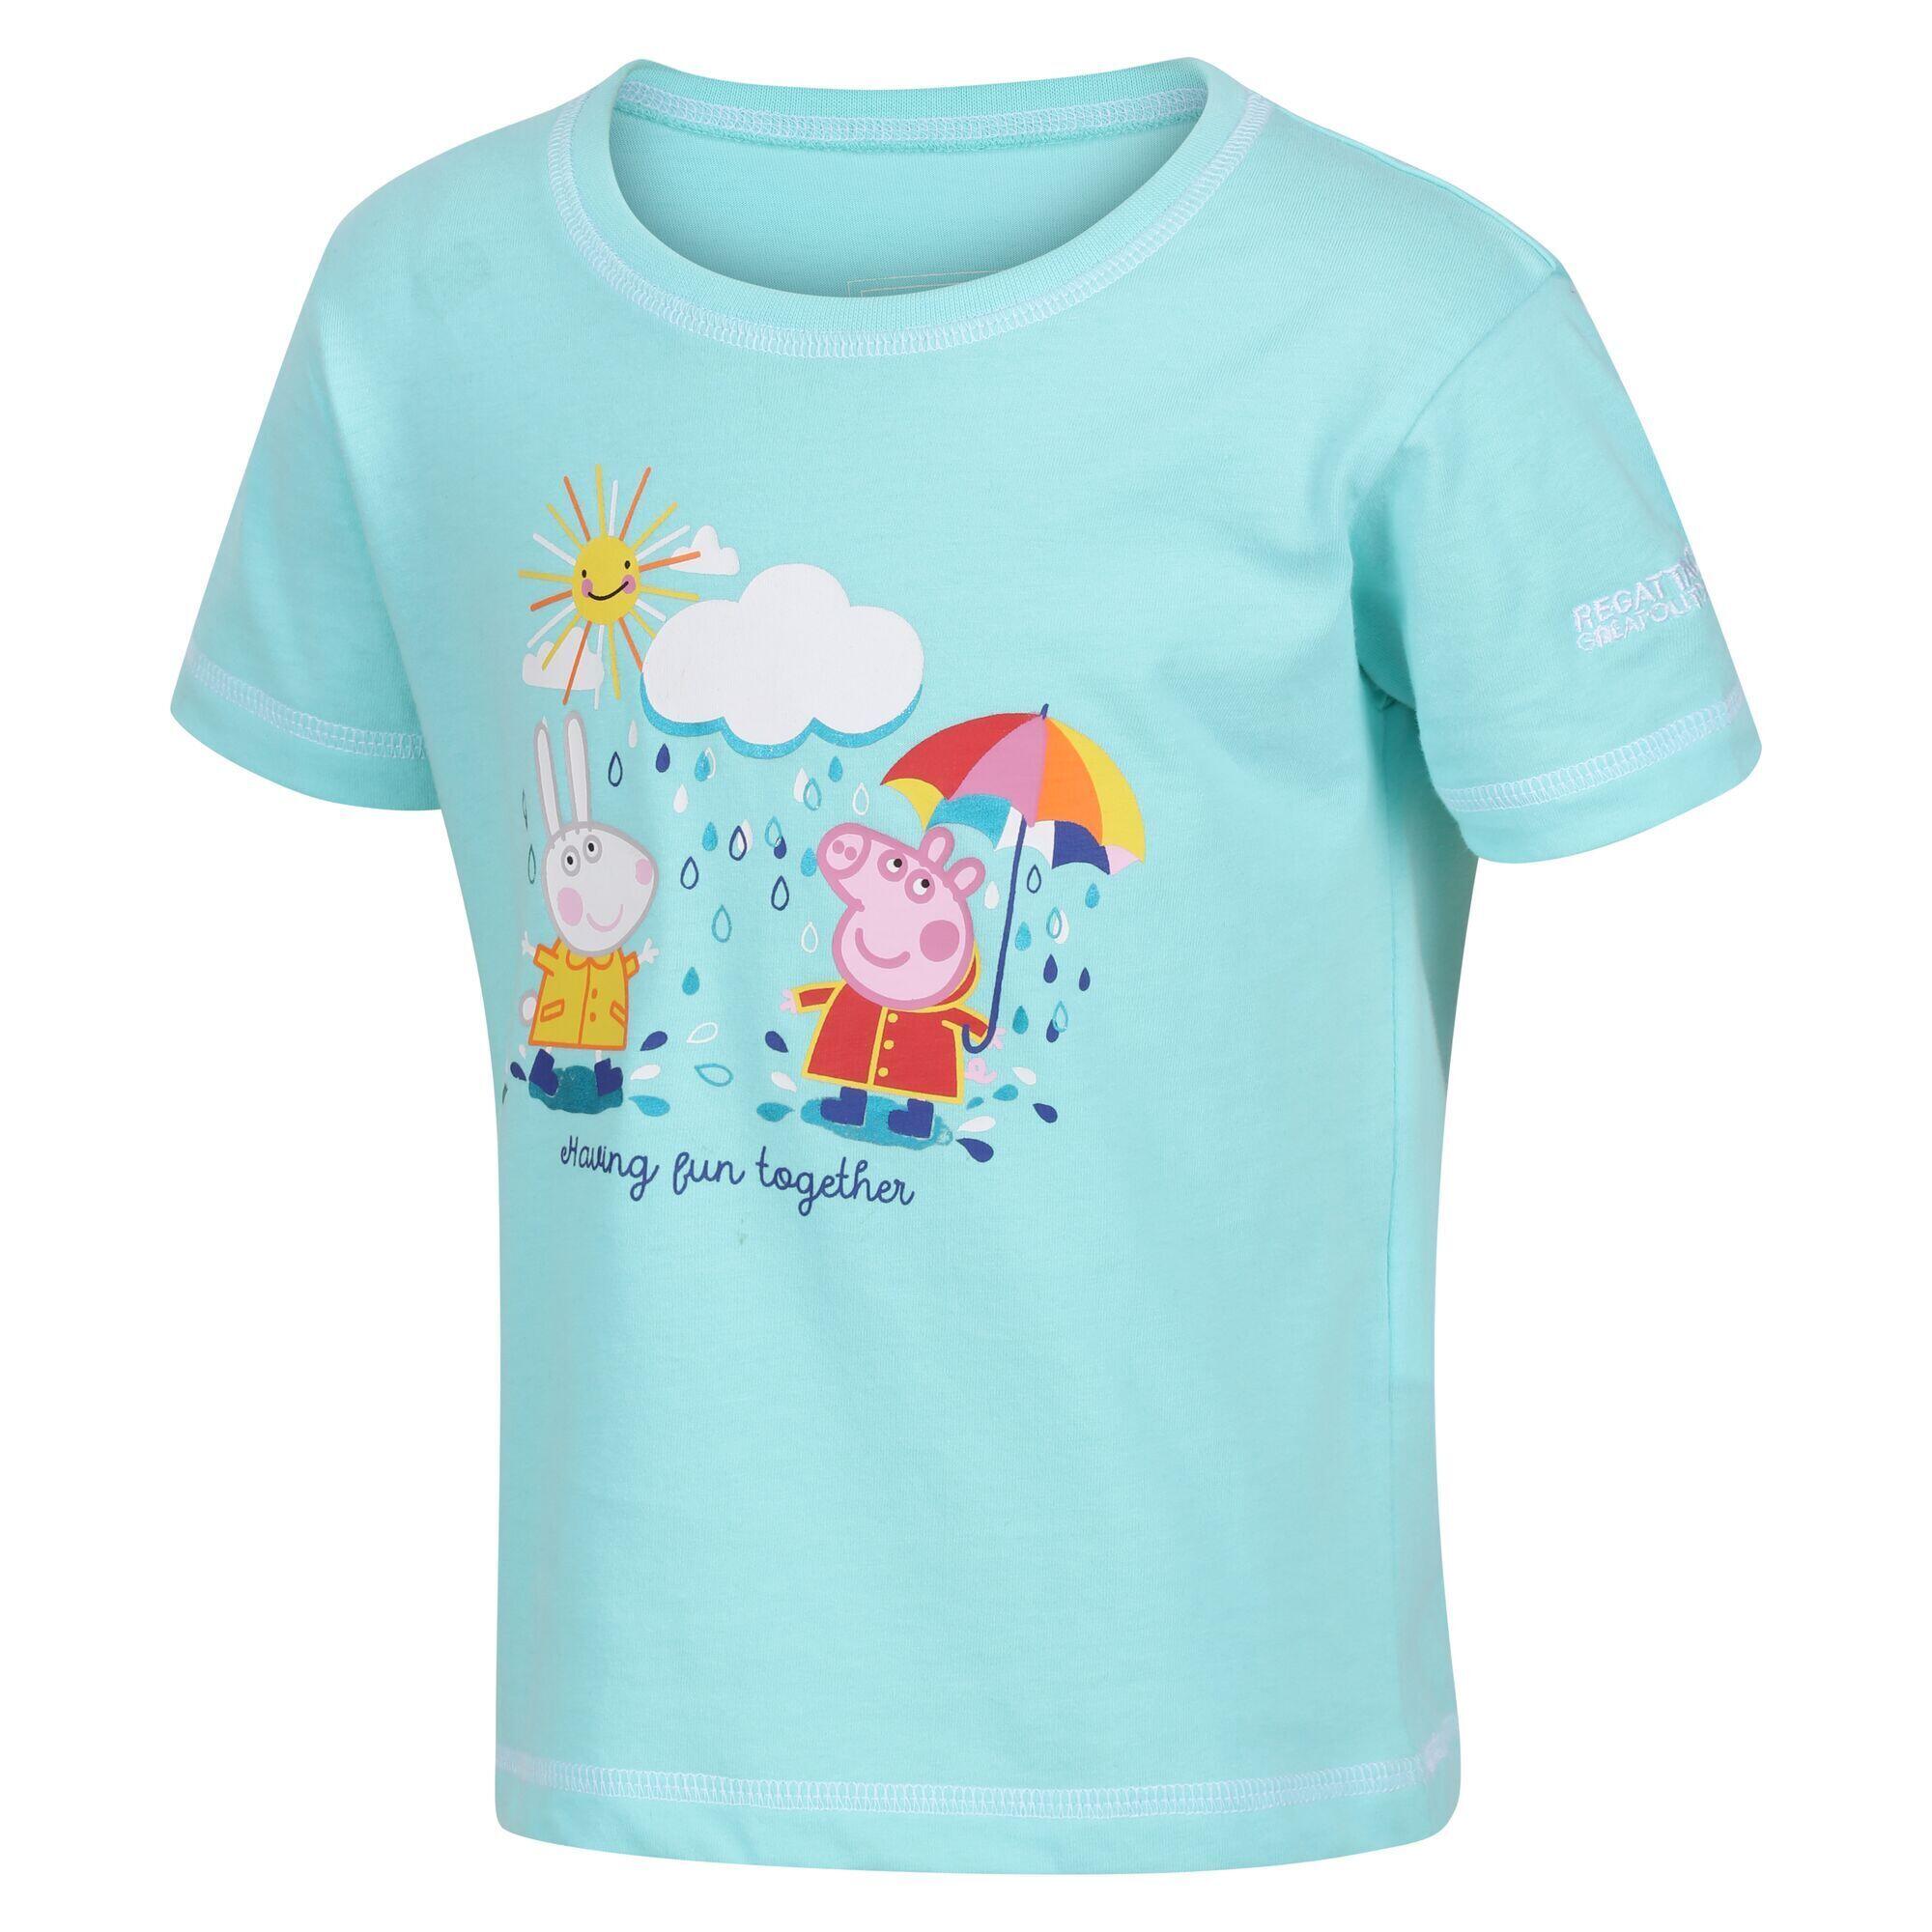 Childrens/Kids Peppa Pig Printed TShirt (Aruba Blue) 4/5